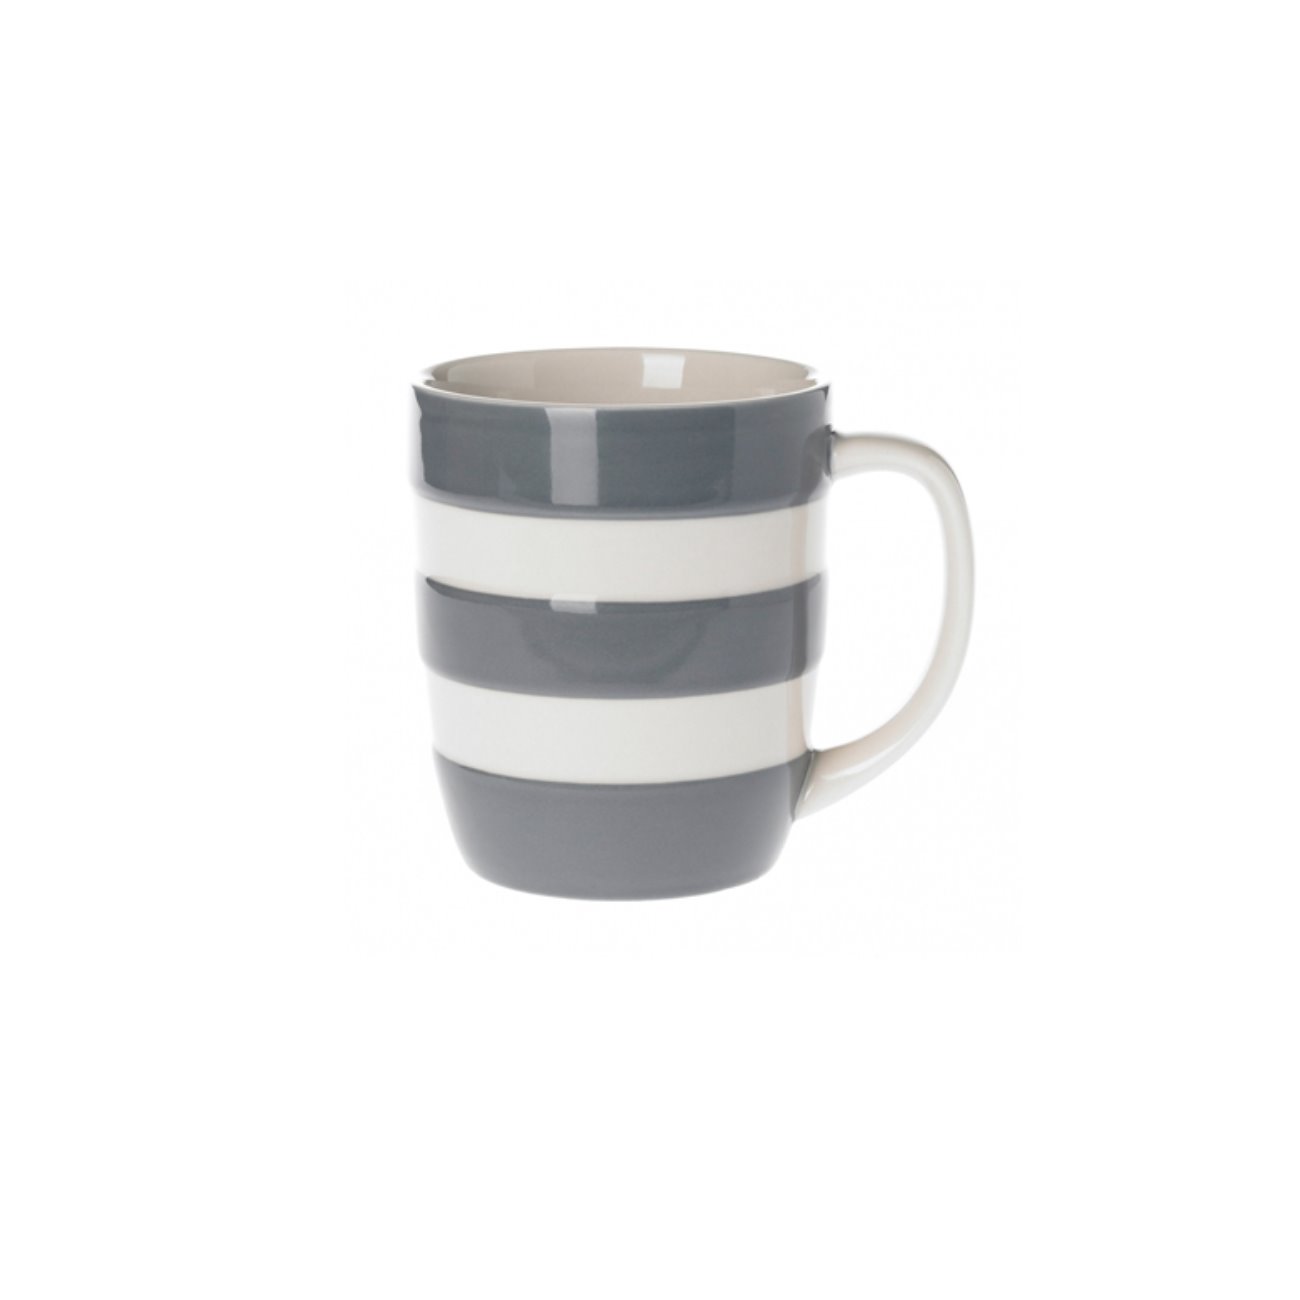 [cornishware]grey mug 34cl/12oz